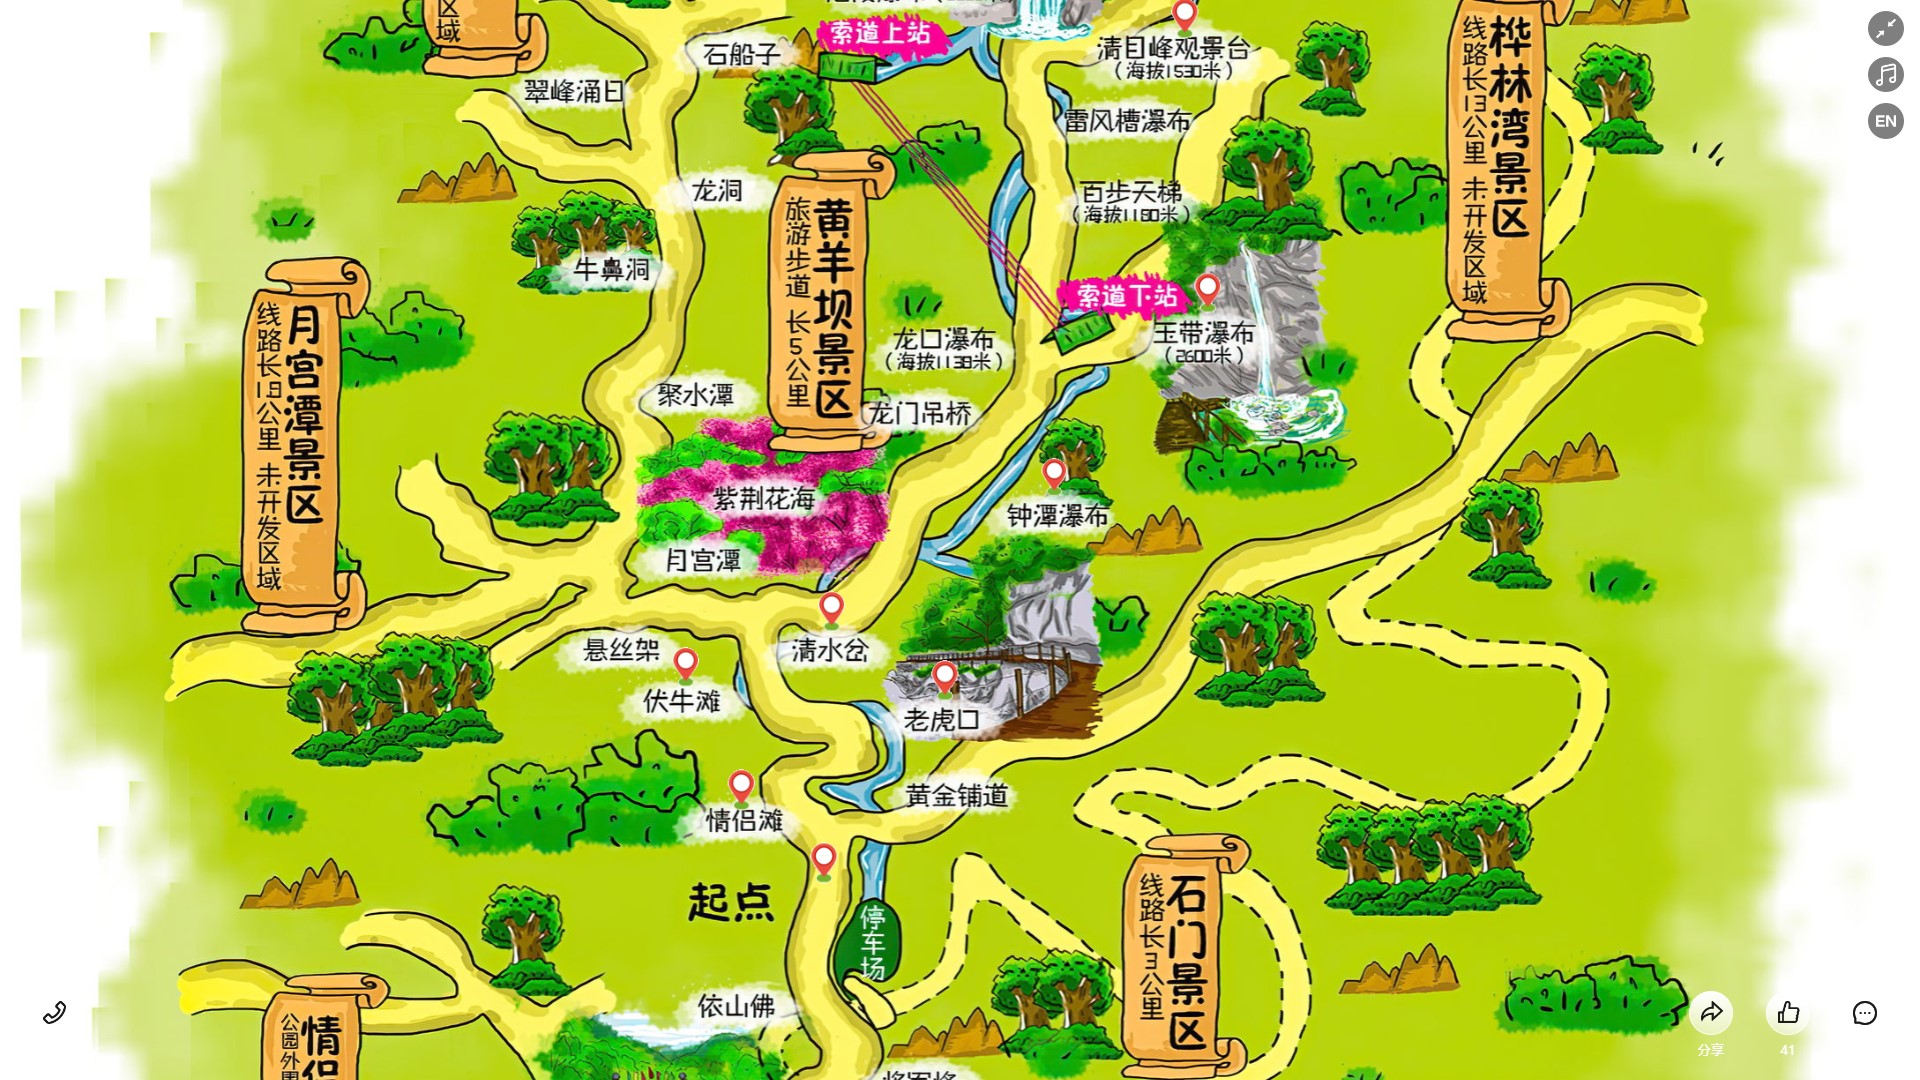 竹山景区导览系统